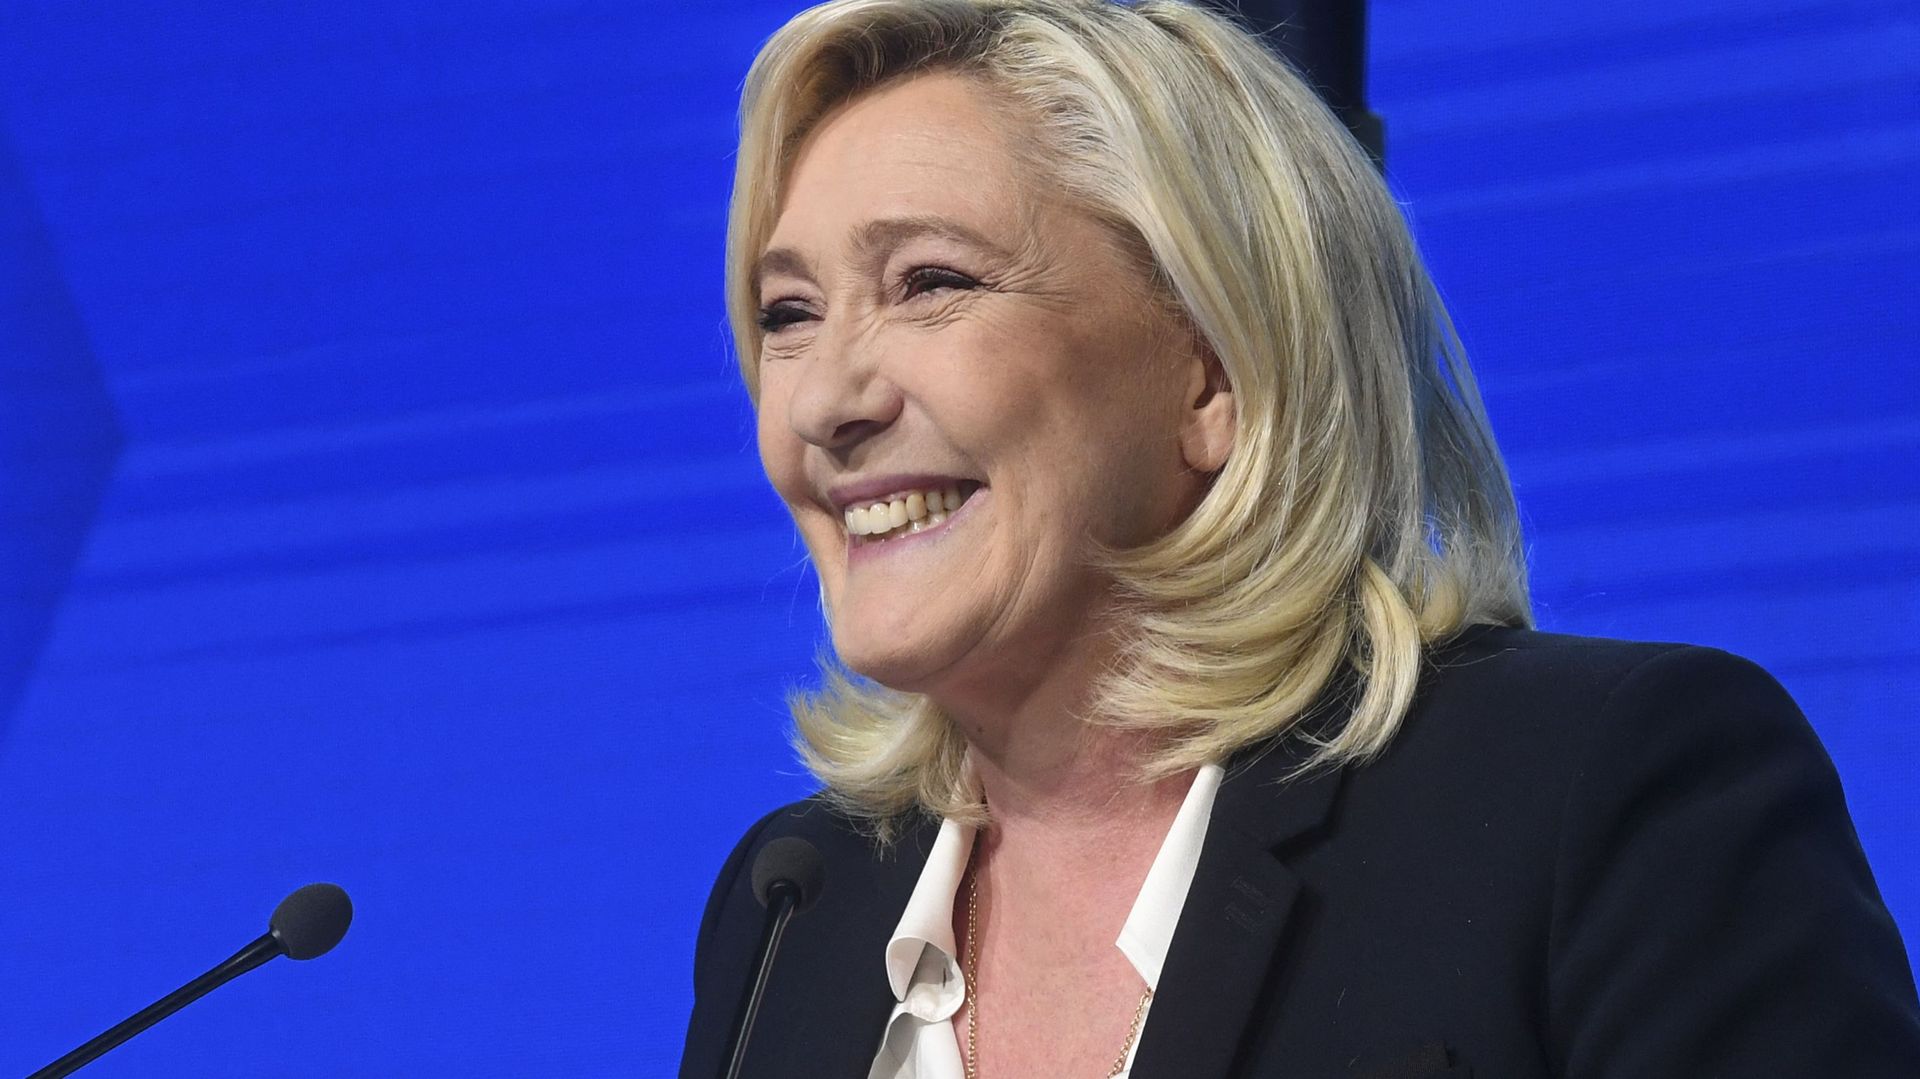 Marine Le Pen s’est qualifiée pour le deuxième tour des élections présidentielles françaises.